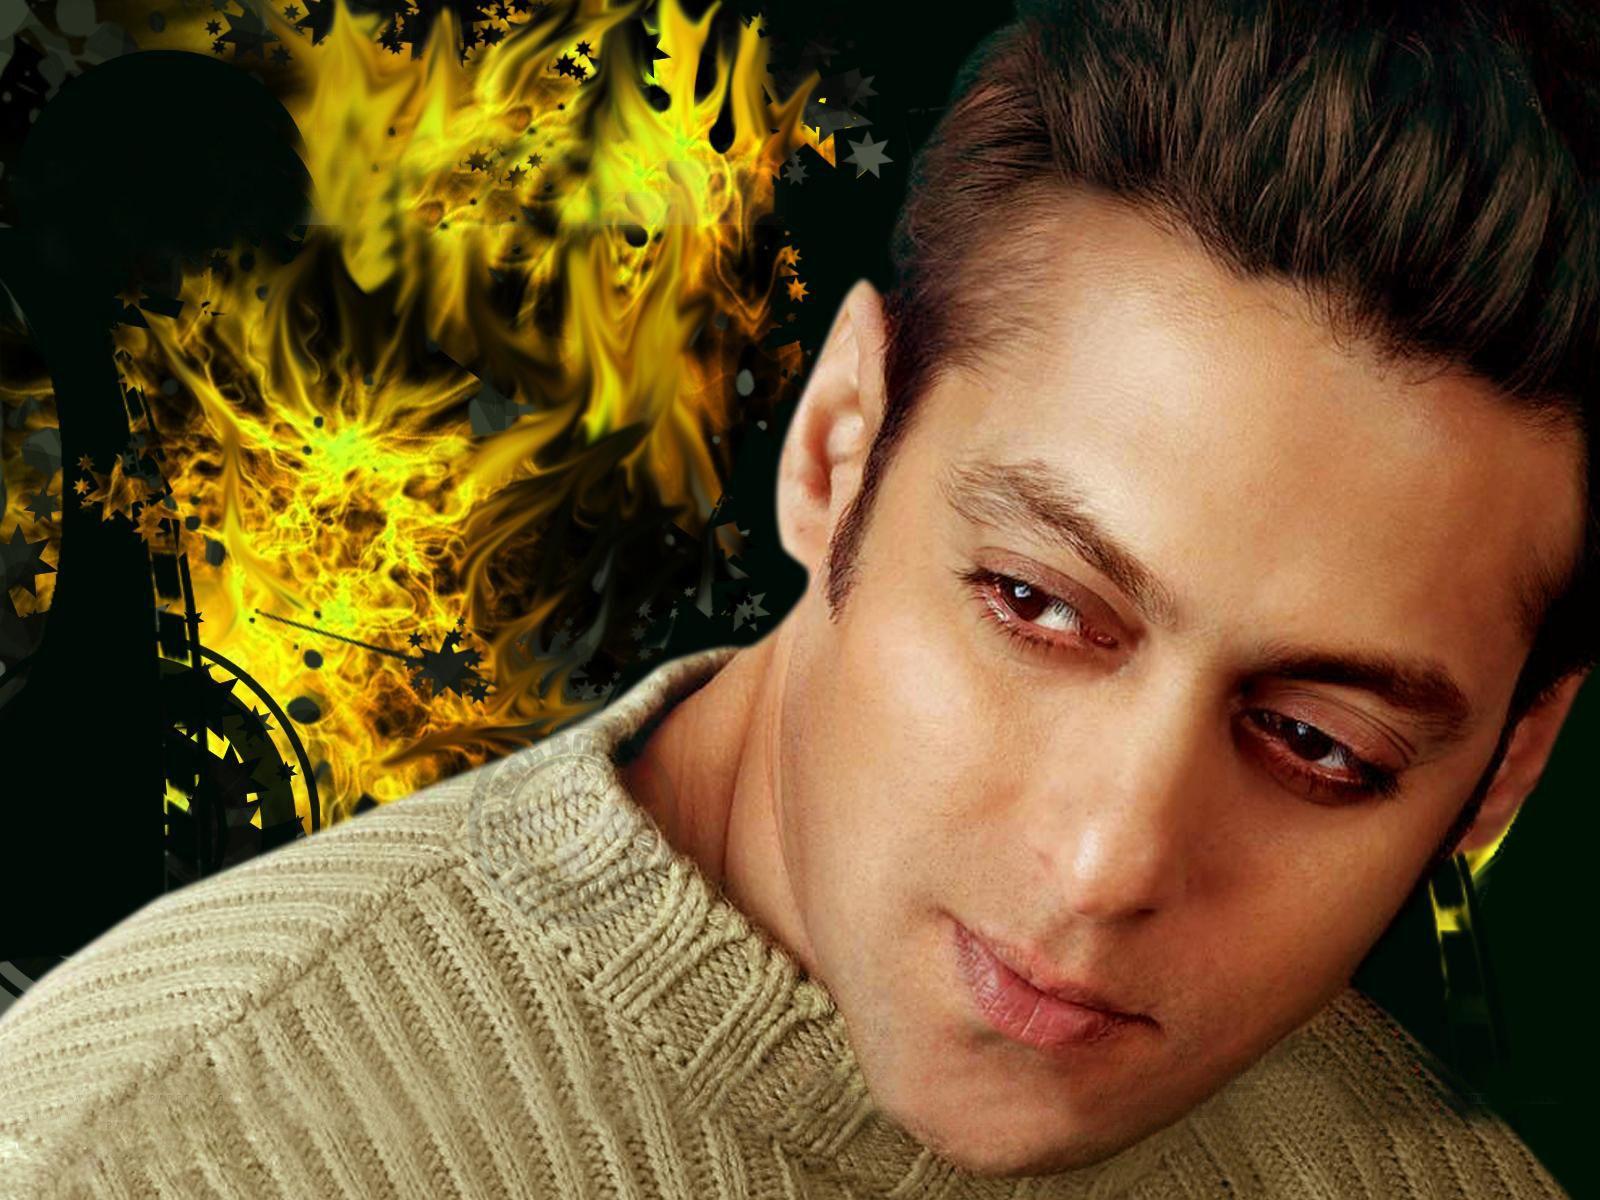 Salman Khan Wallpaper 1600x1200 px. Salman